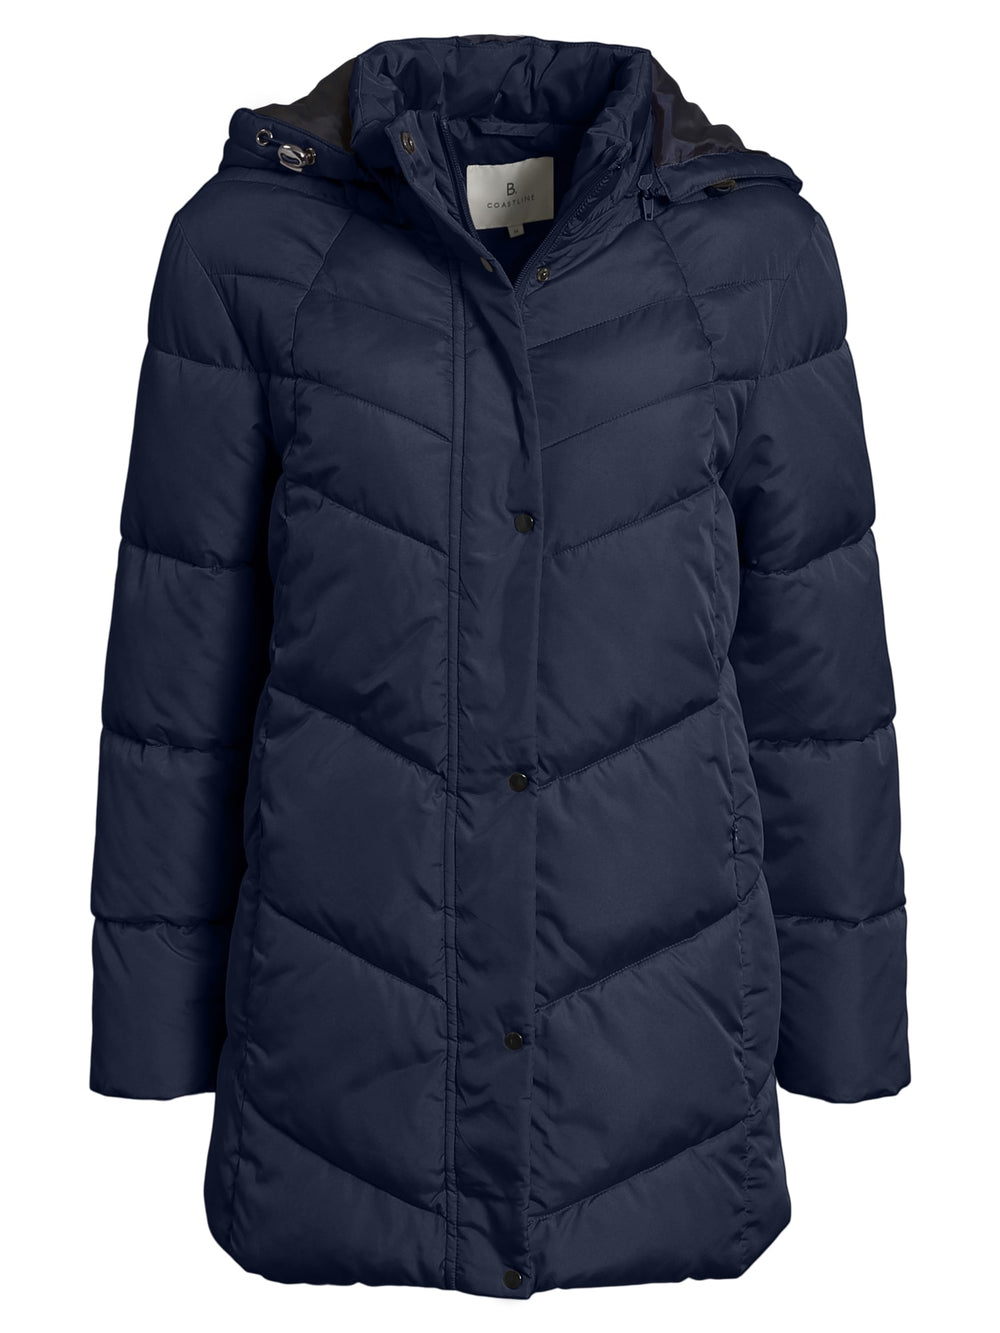 doorstikte mantel met kap in blauw - b. copenhagen - 213883 - grote maten - dameskleding - kledingwinkel - herent - leuven